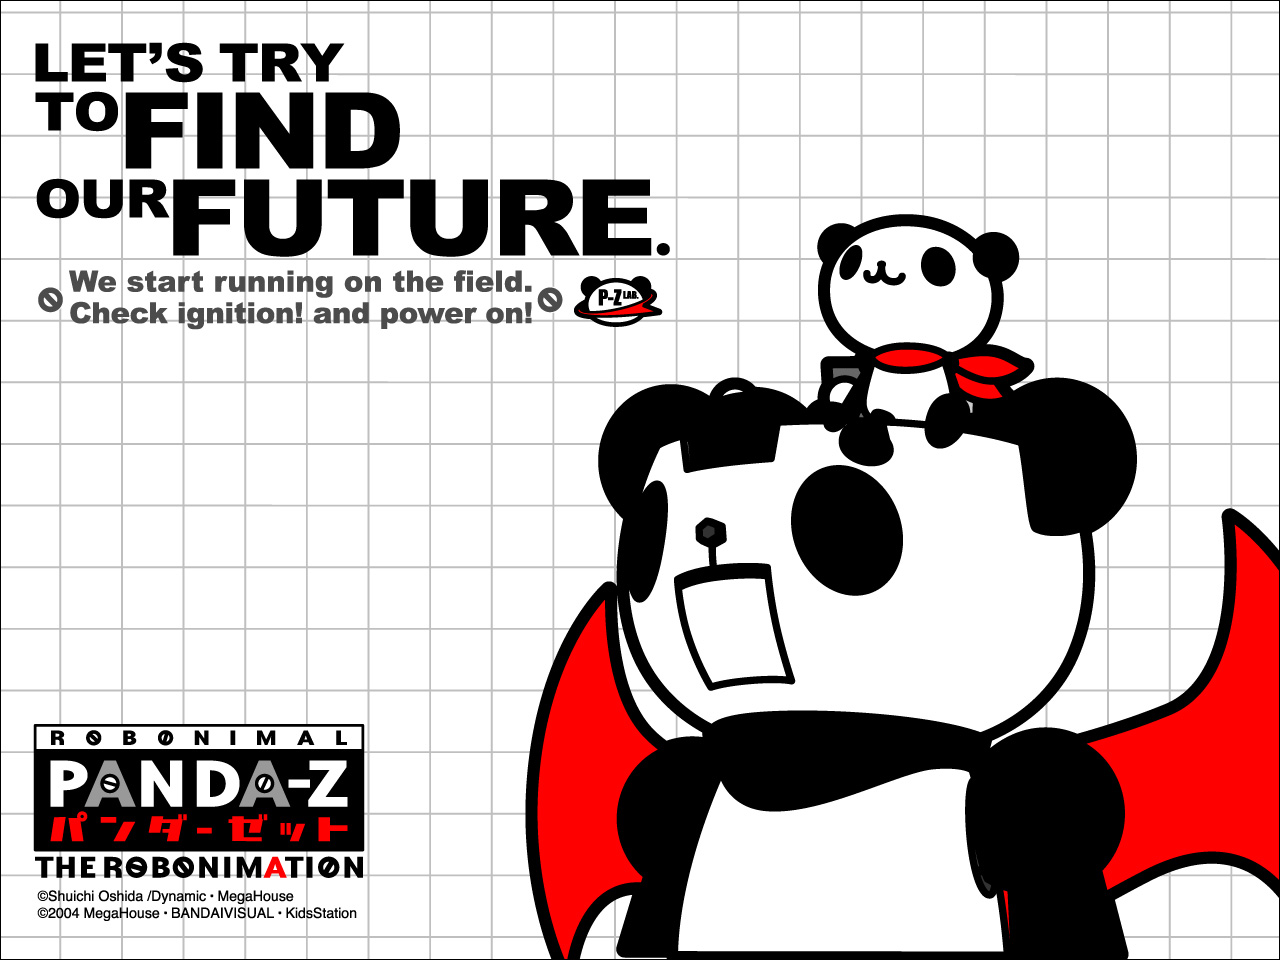 Panda Z